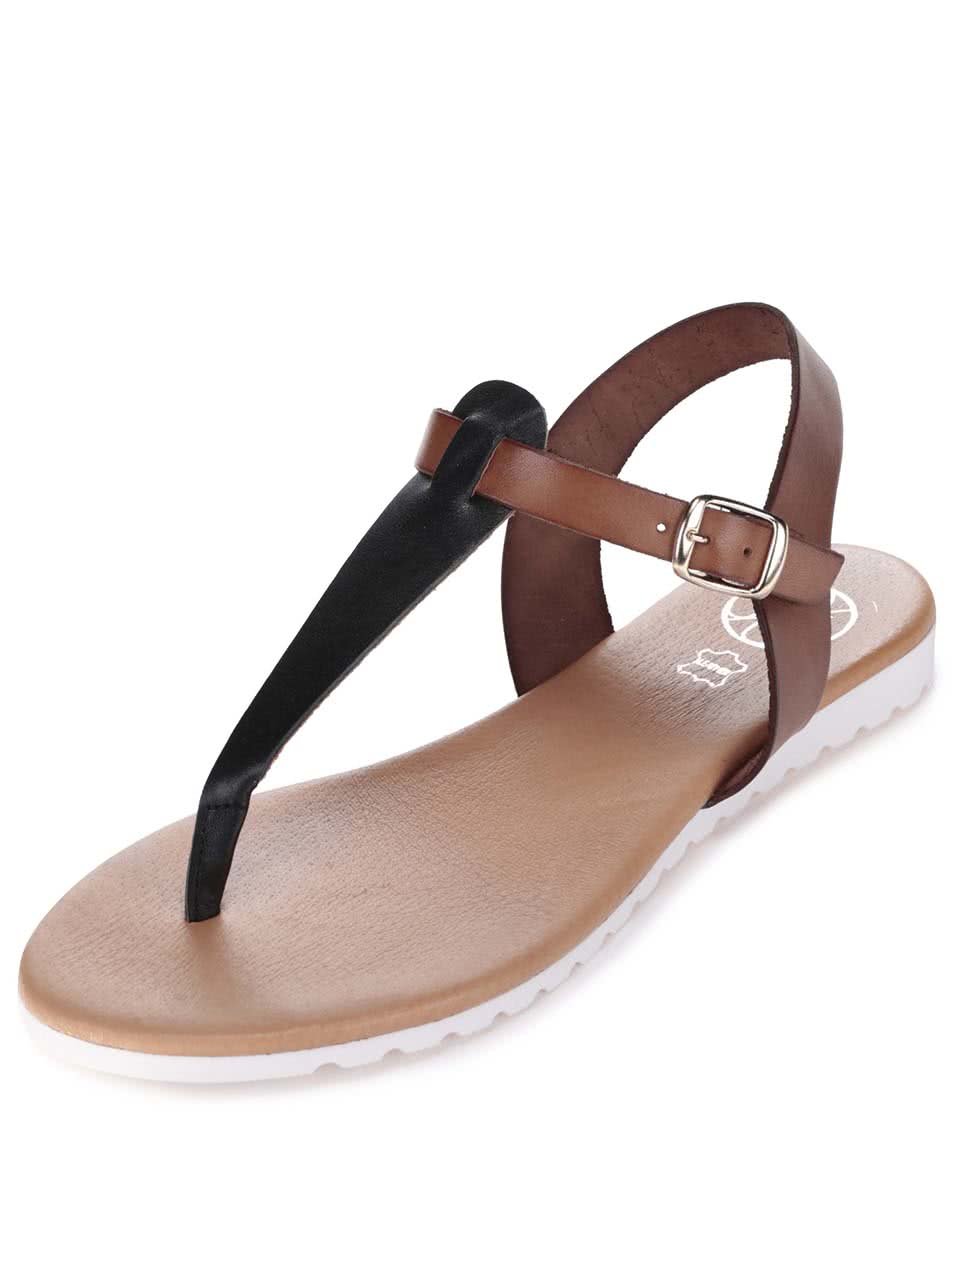 Černo-hnědé kožené sandály OJJU